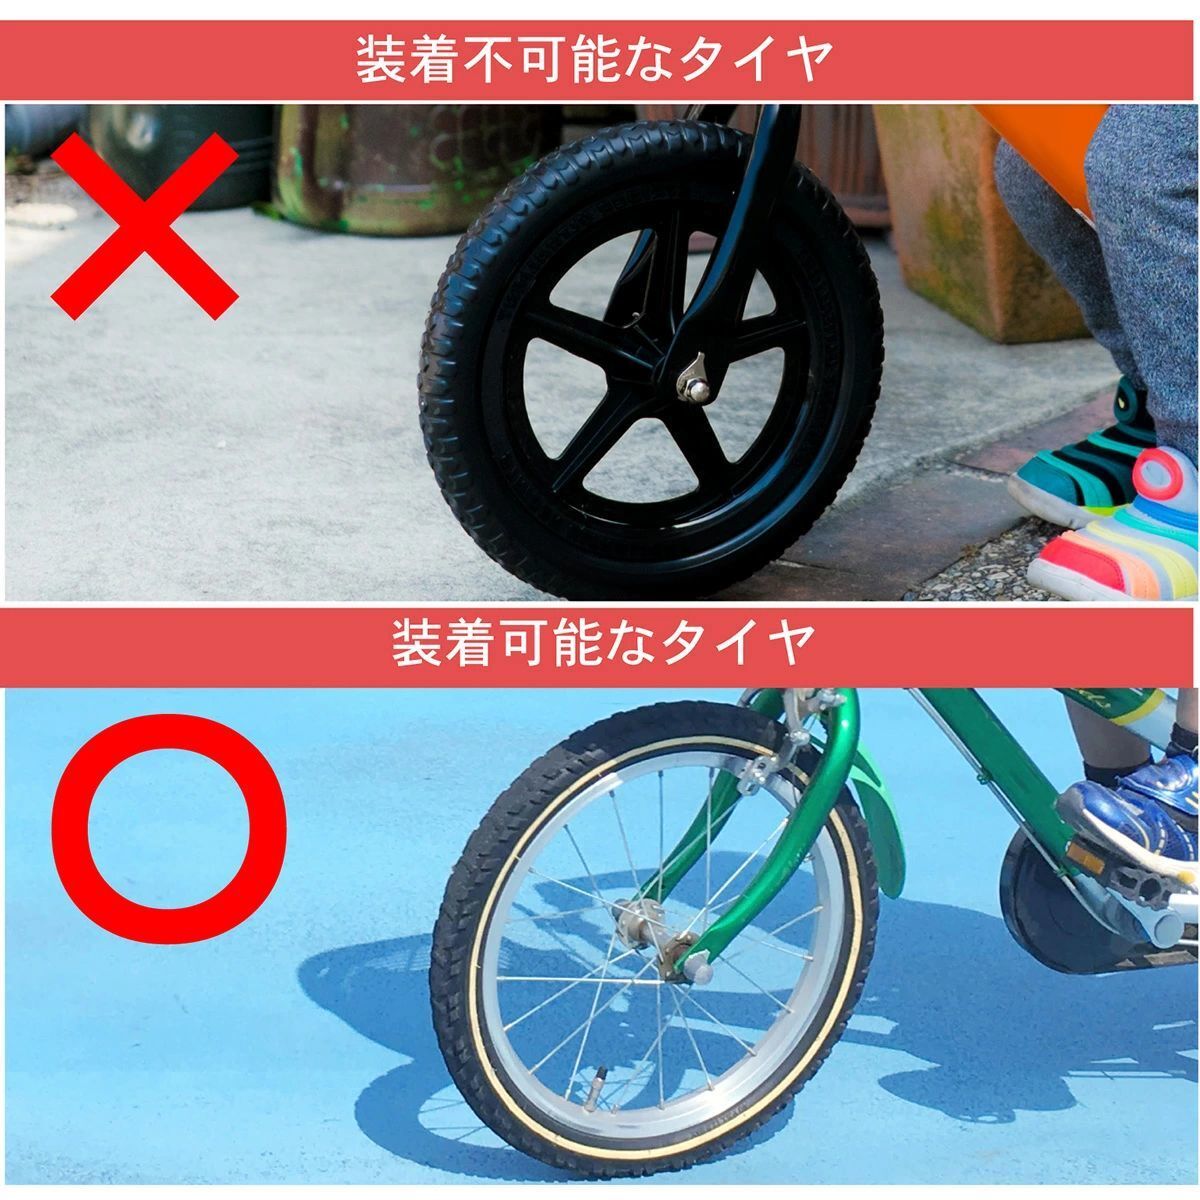 7 color shines #BMX# tire. light . shines # scooter # kick scooter # board Like # Kics ke-ta-# bicycle # balance bike #1 piece 